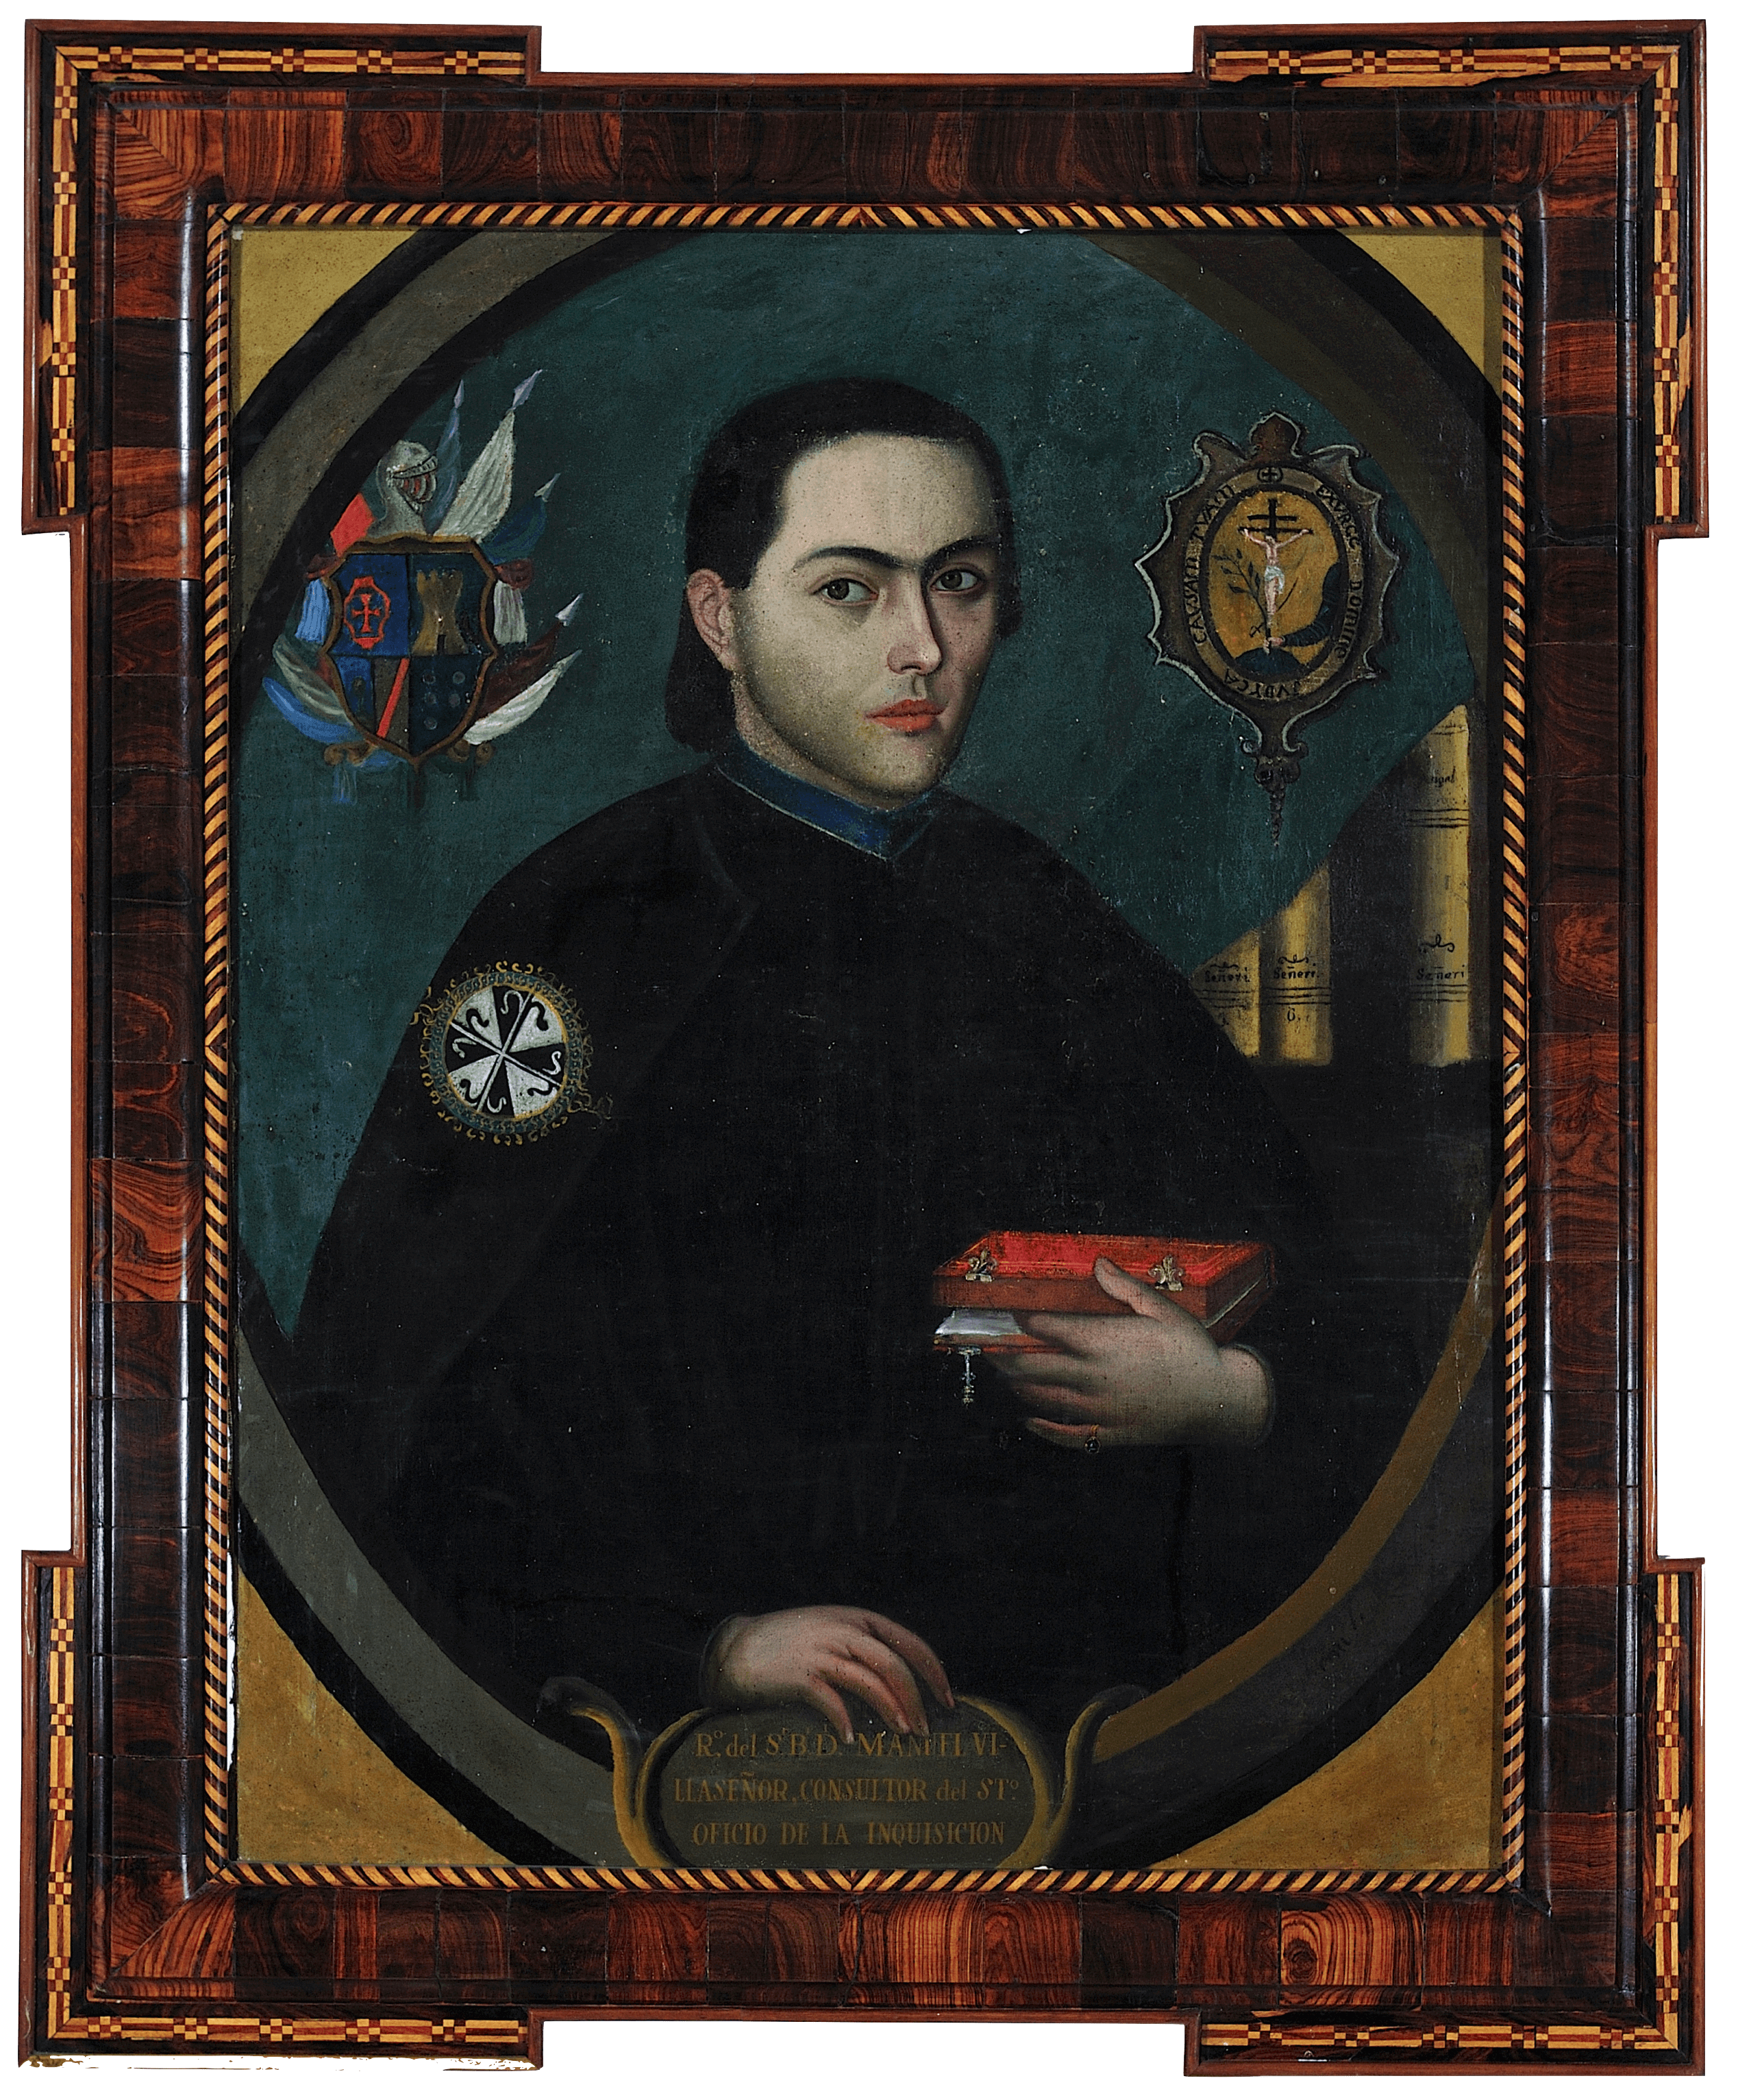 Retrato de Manuel Villaseñor | Creación y restauración: lo singular y complejo del arte | Museo Amparo, Puebla